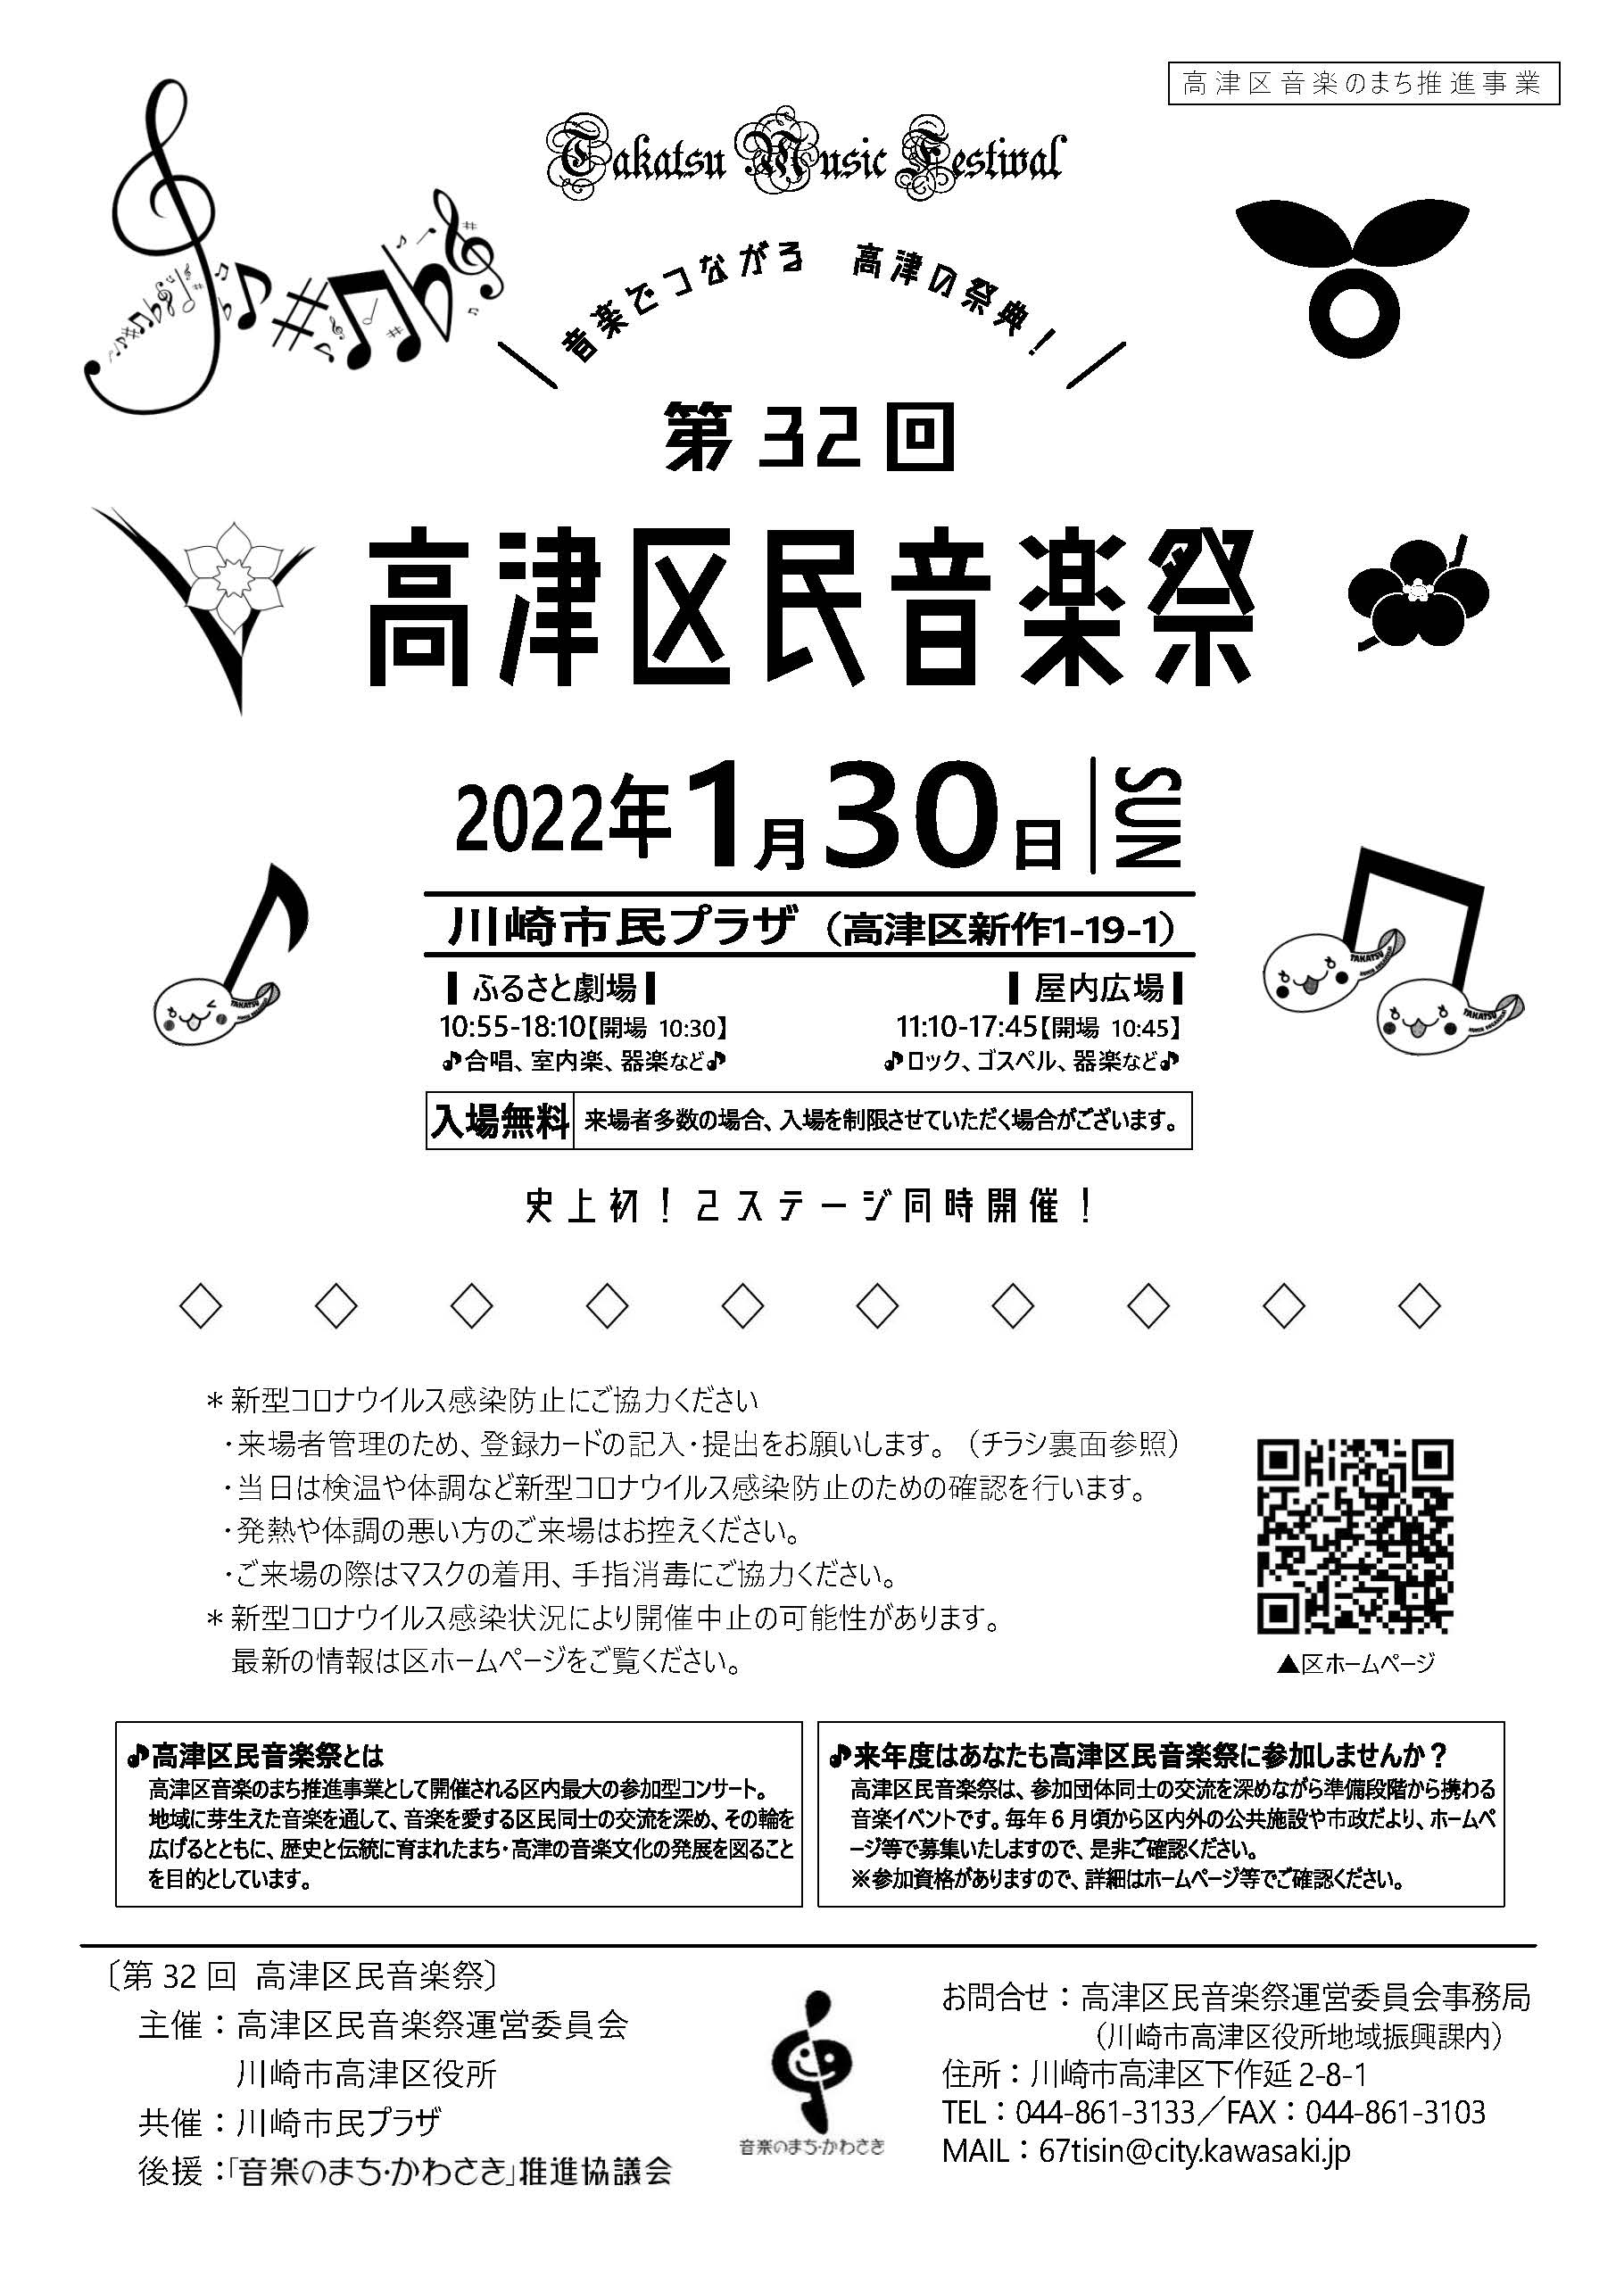 無観客開催 【2022年1月30日】第32回 高津区民音楽祭